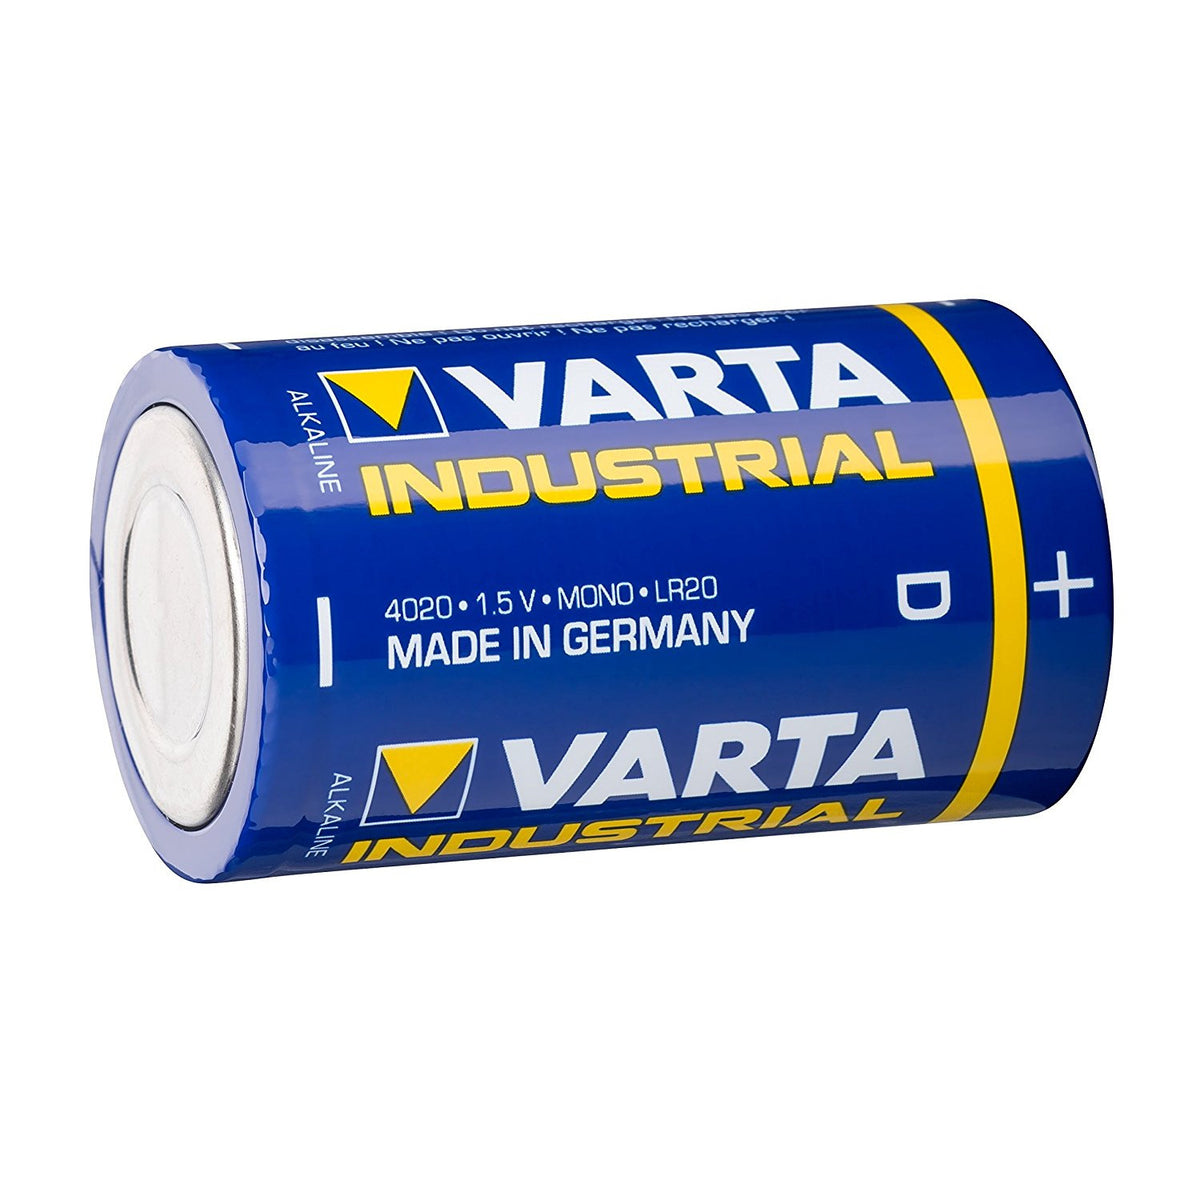 VARTA Industrial LR20 / D 17000MAH Batterie 1 Stück